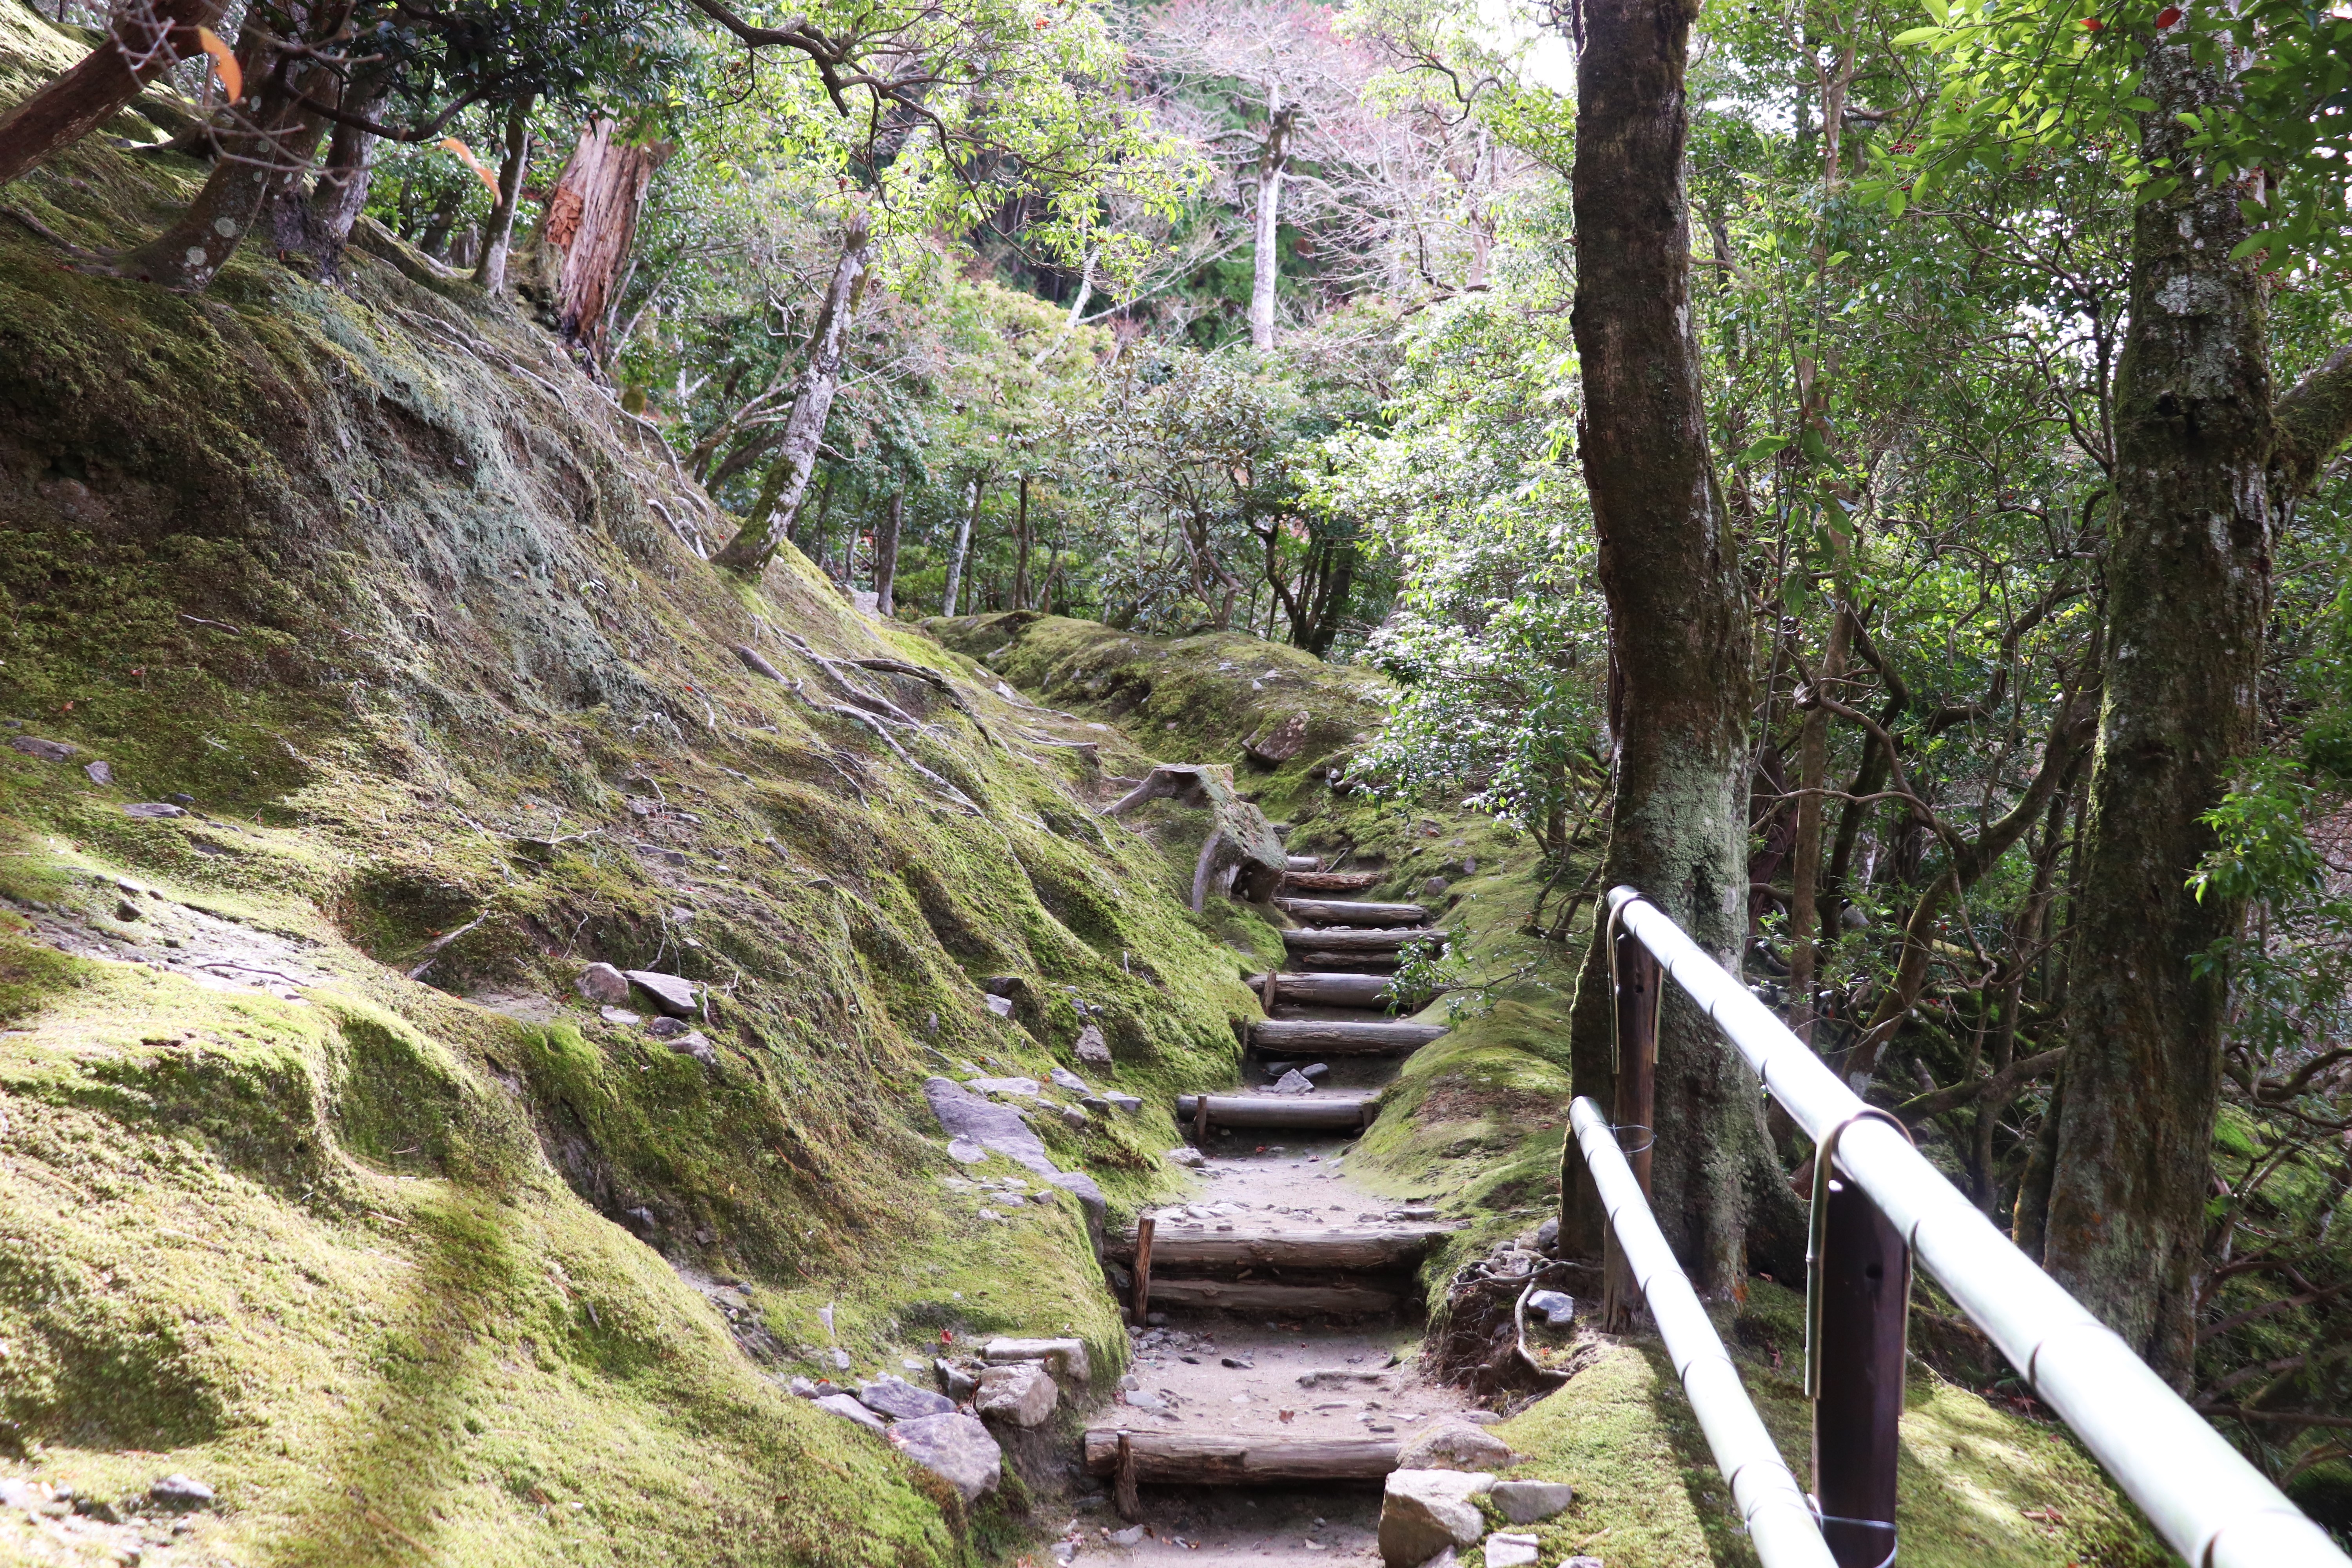 moss gardens of the ginkaku-ji in kyoto